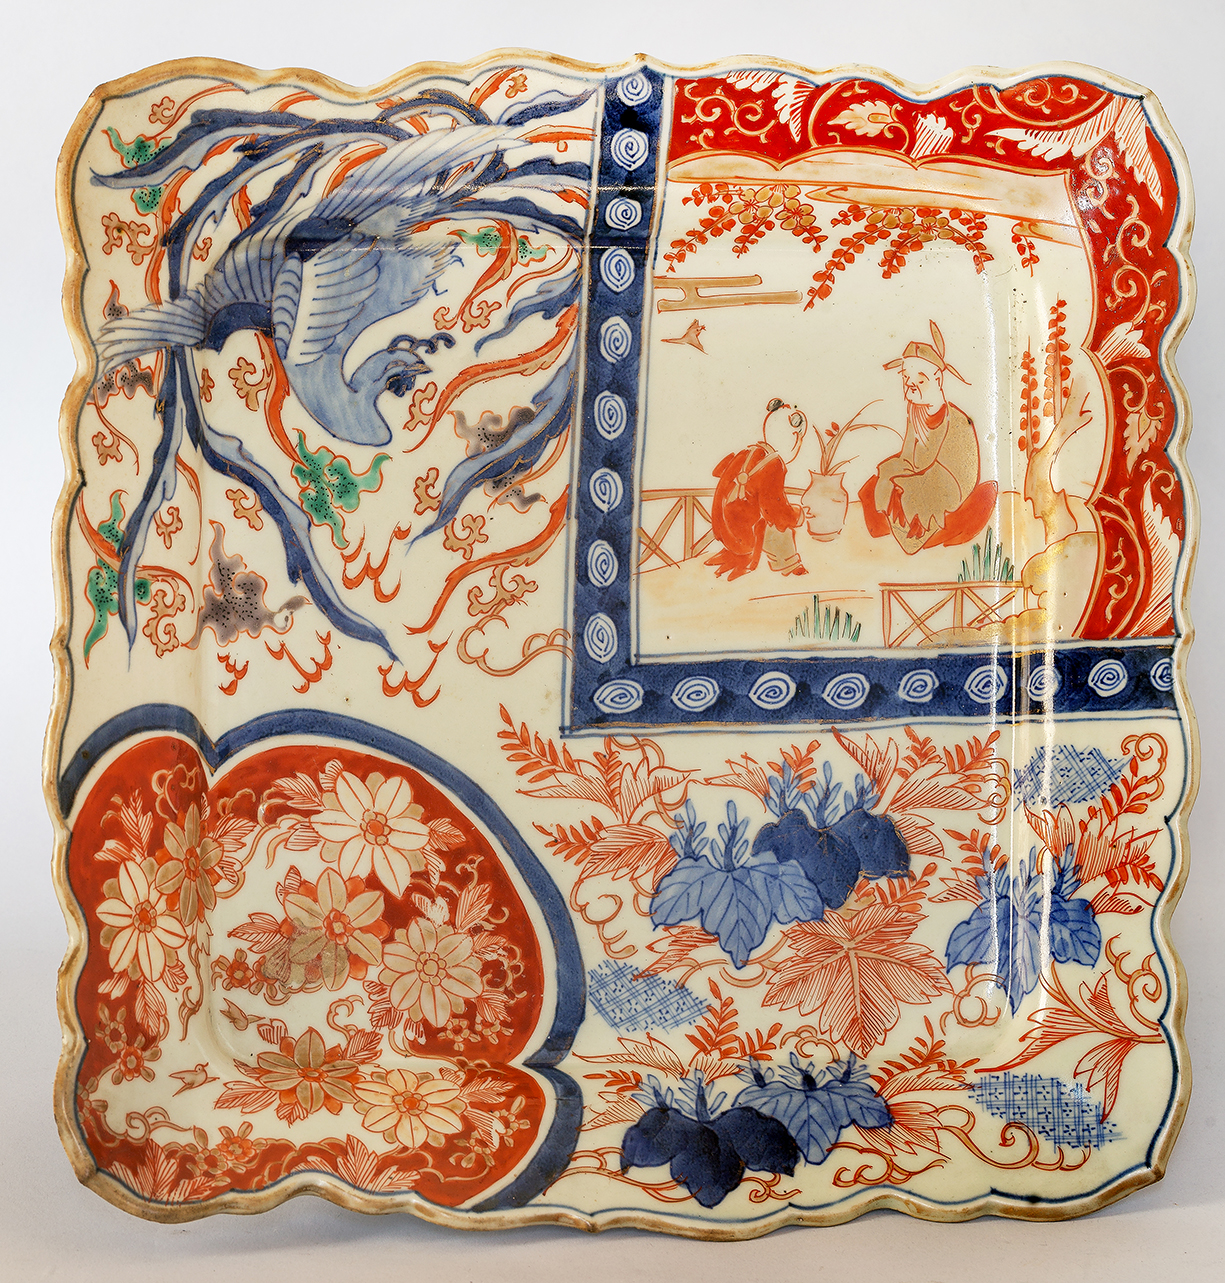 scena di vita orientale/ motivi decorativi vegetali e animali (piatto, opera isolata) - ambito giapponese (metà/ inizio secc. XIX-XX)